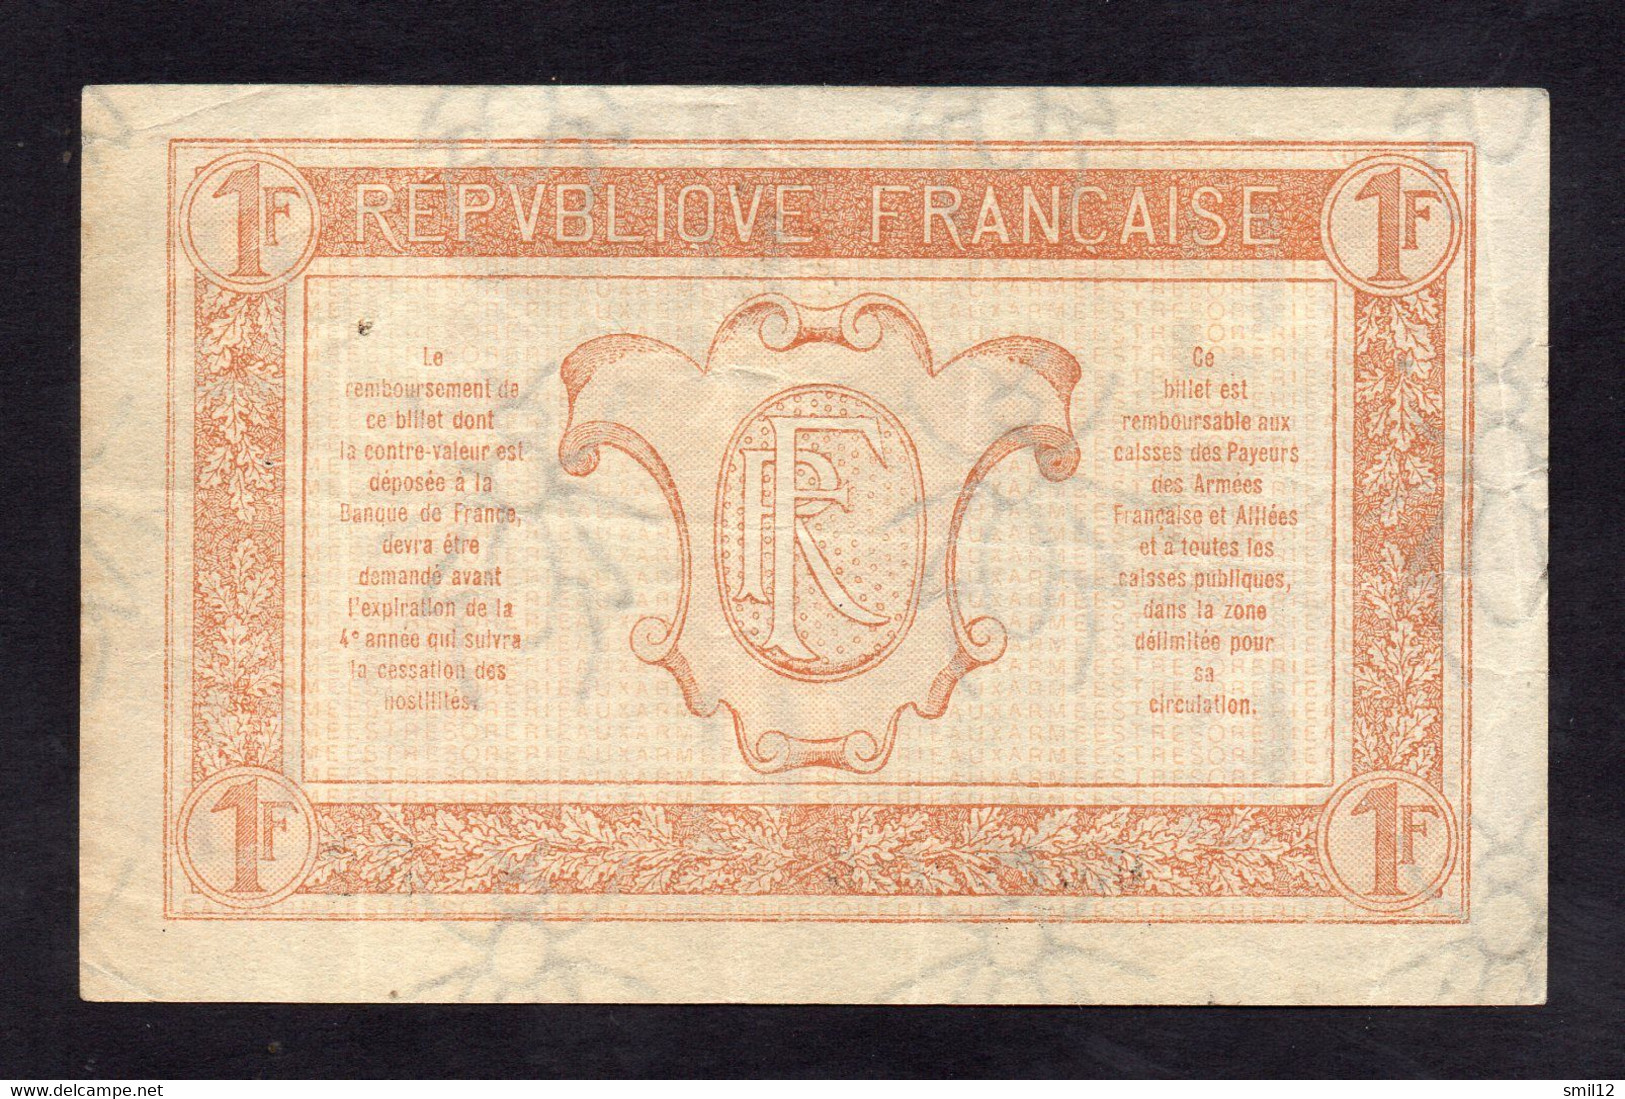 Trésorerie Aux Armées - 1 Franc - Lettre B2 - 1917-1919 Army Treasury